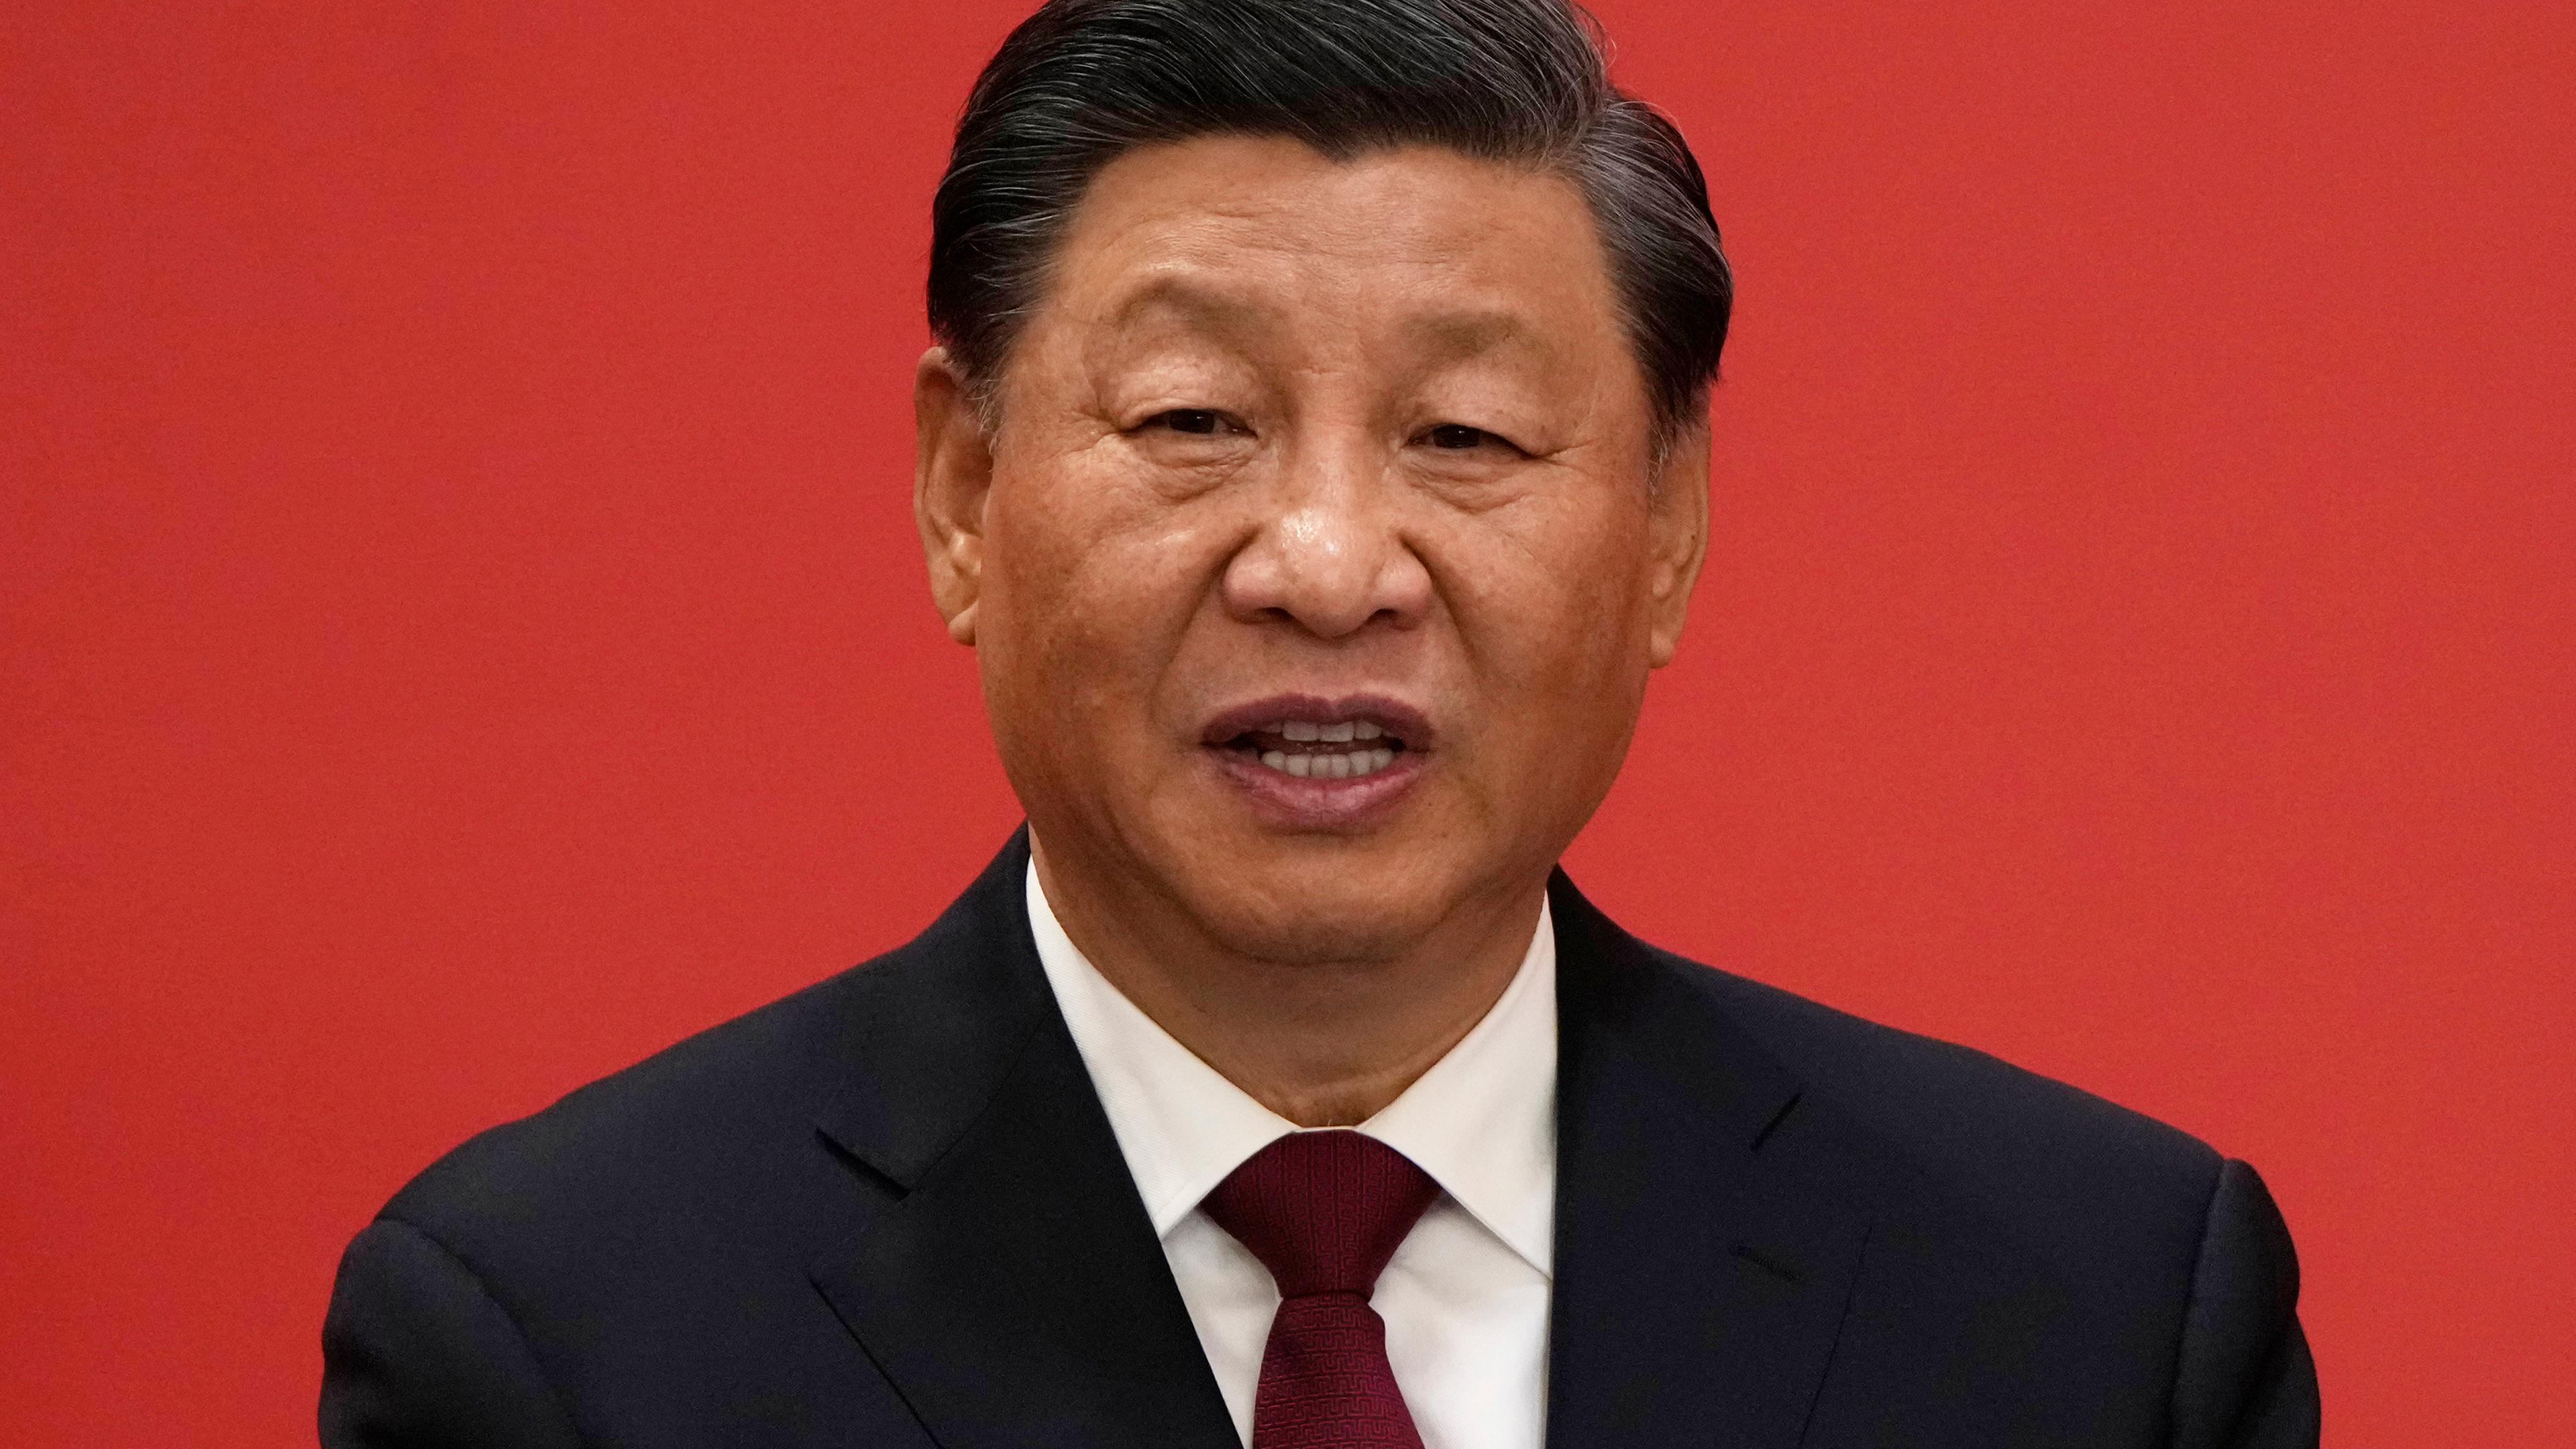 Peking, China, 23.10.2022: Xi Jinping beginnt seine dritte Amtszeit